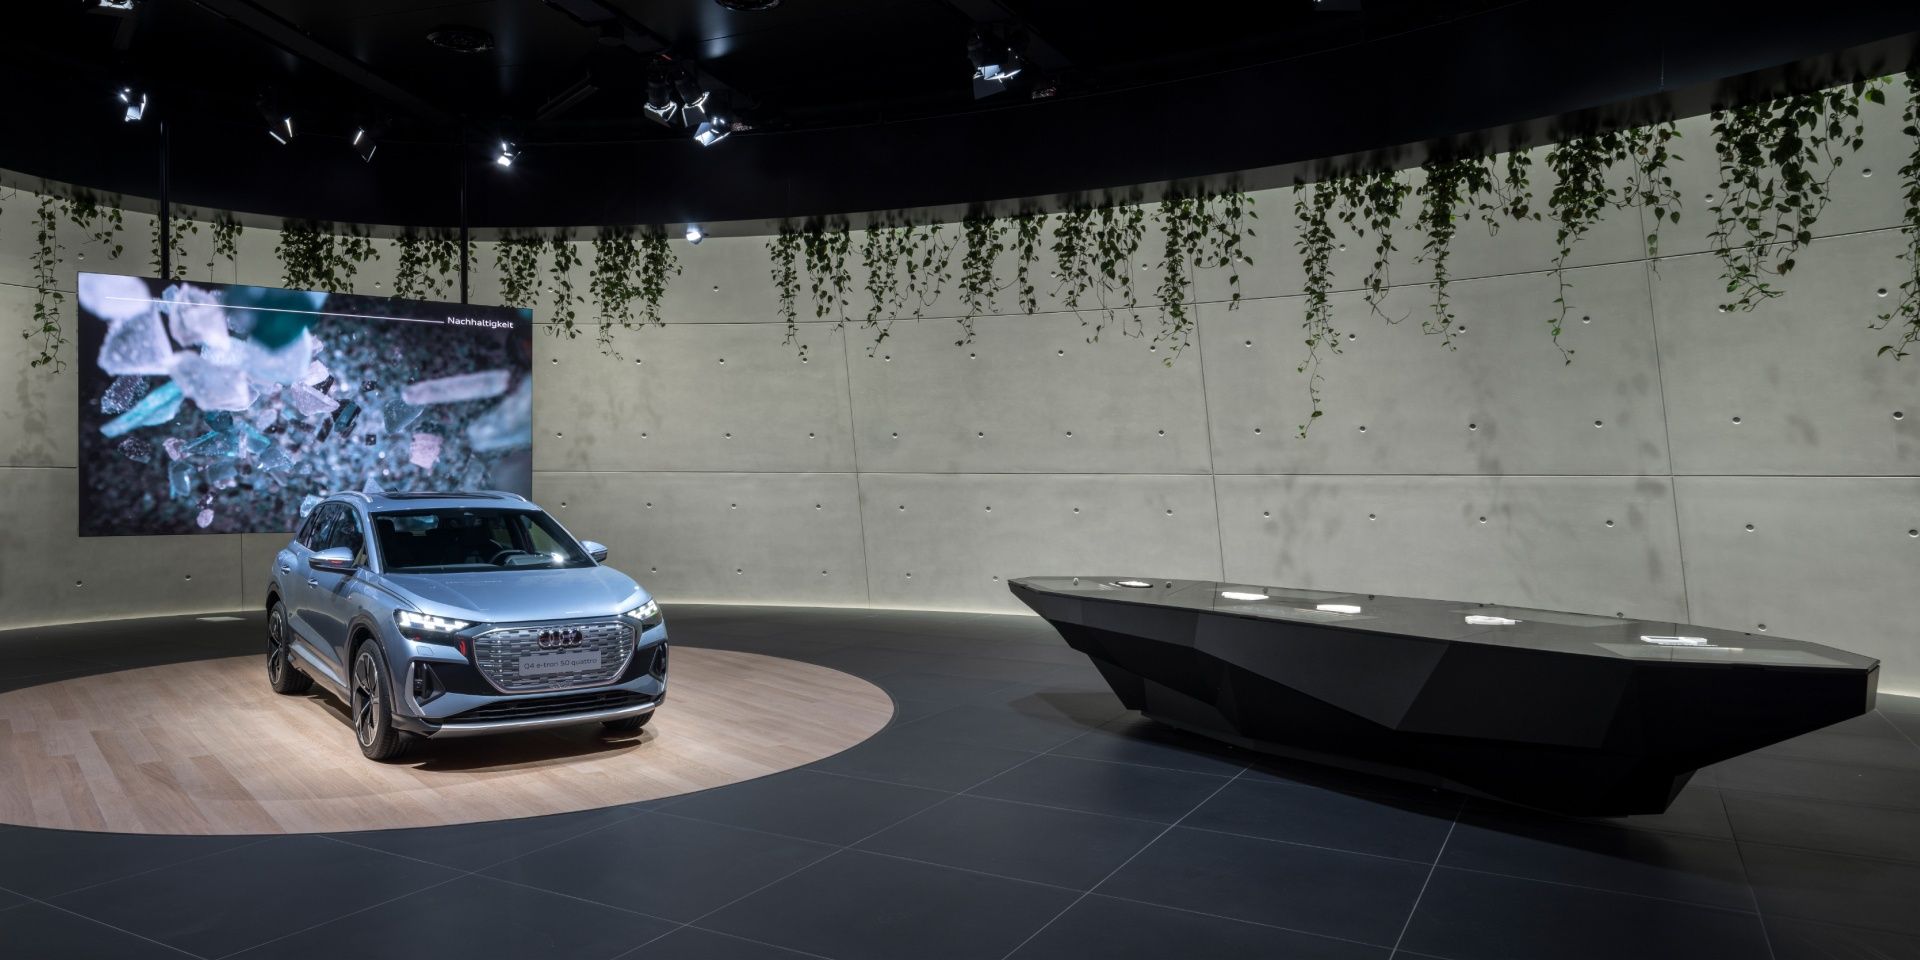 De Audi Q4 e-tron en een projectie over het thema duurzaamheid zijn te zien. Daarnaast de informatietafel.